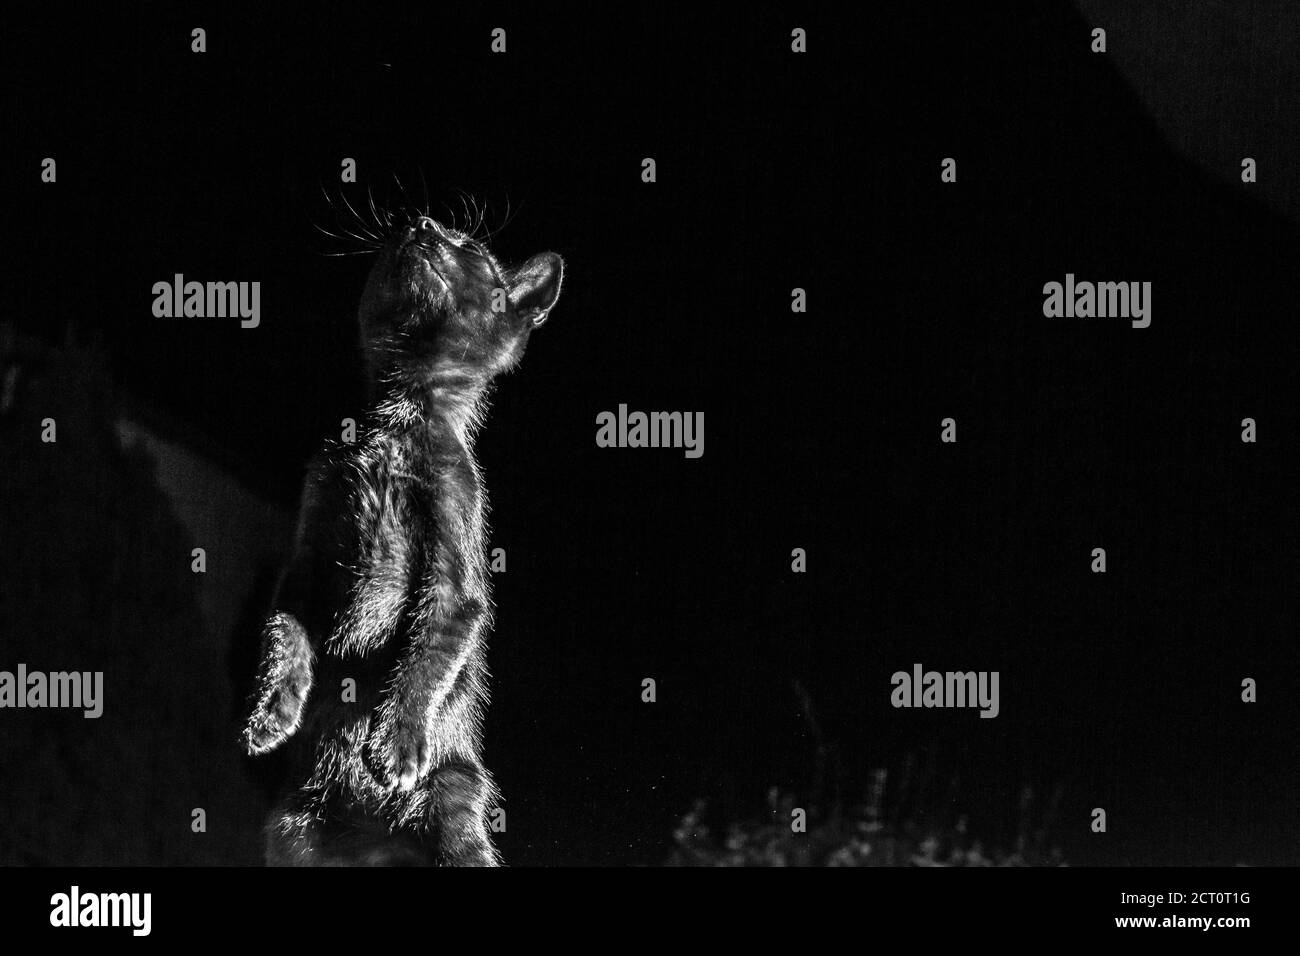 Gattino nero, animale domestico di due mesi, si leva su due pedine alla notte d'estate, fotografia chiave bassa di gioco del gatto all'esterno, fuoco selettivo basso, sfondo scuro Foto Stock